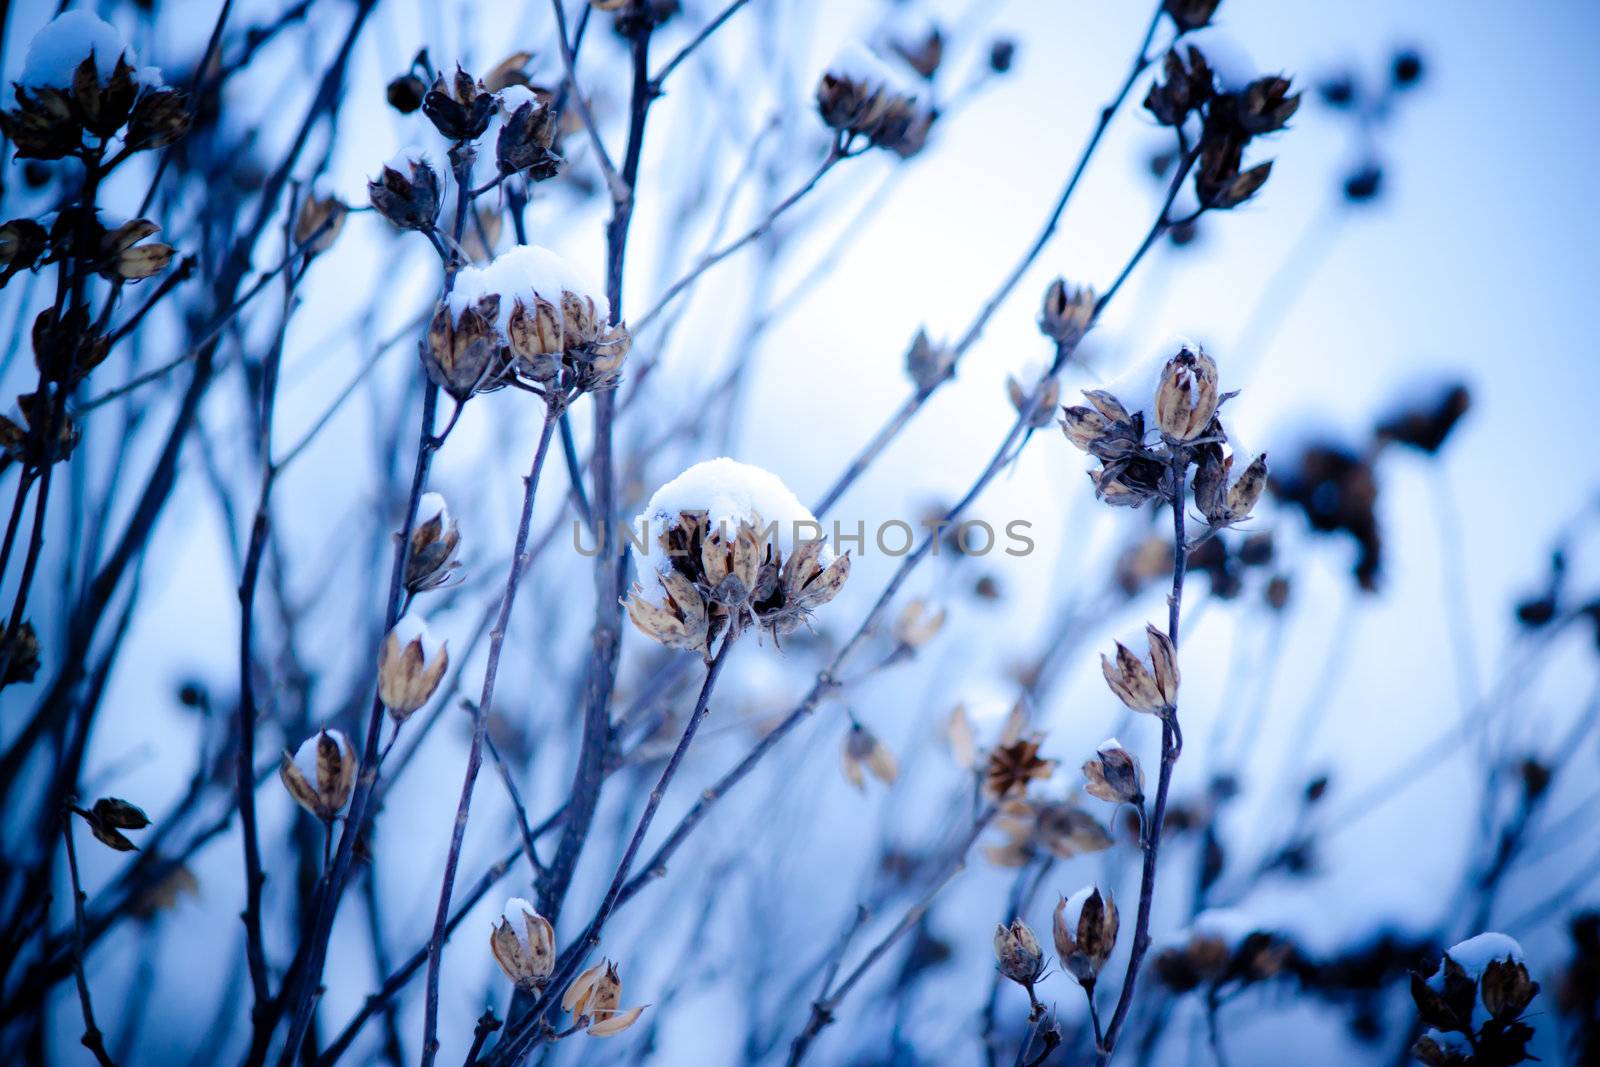 Flower in Snow by melpomene